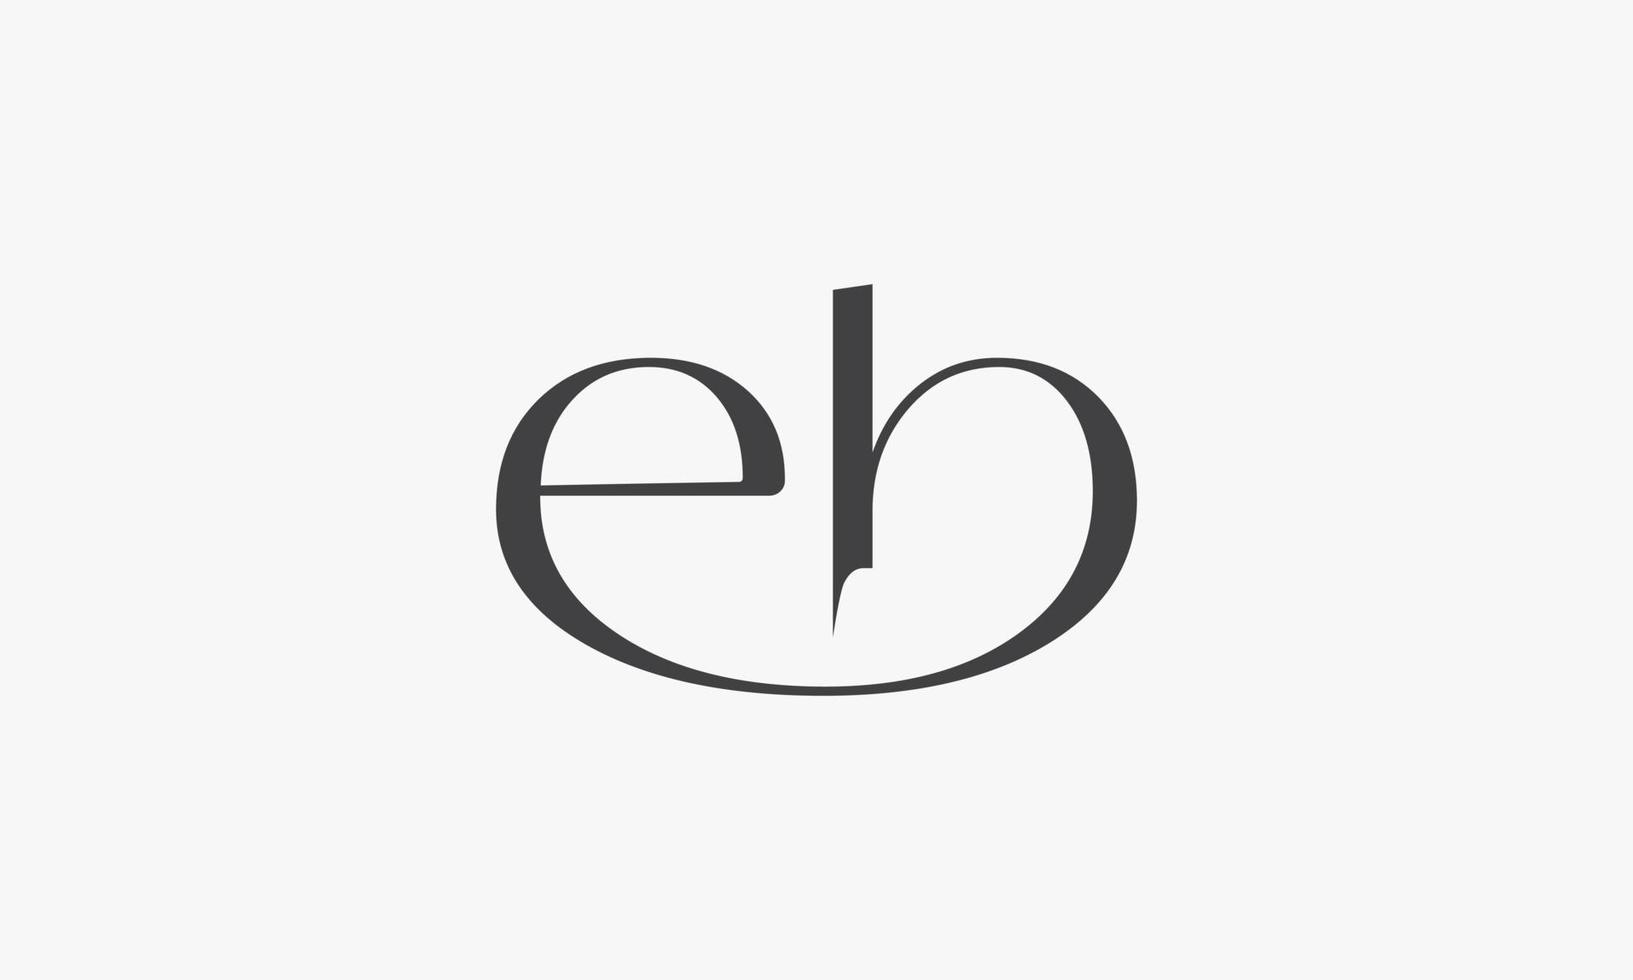 Vetor de design de logotipo em letra minúscula eb